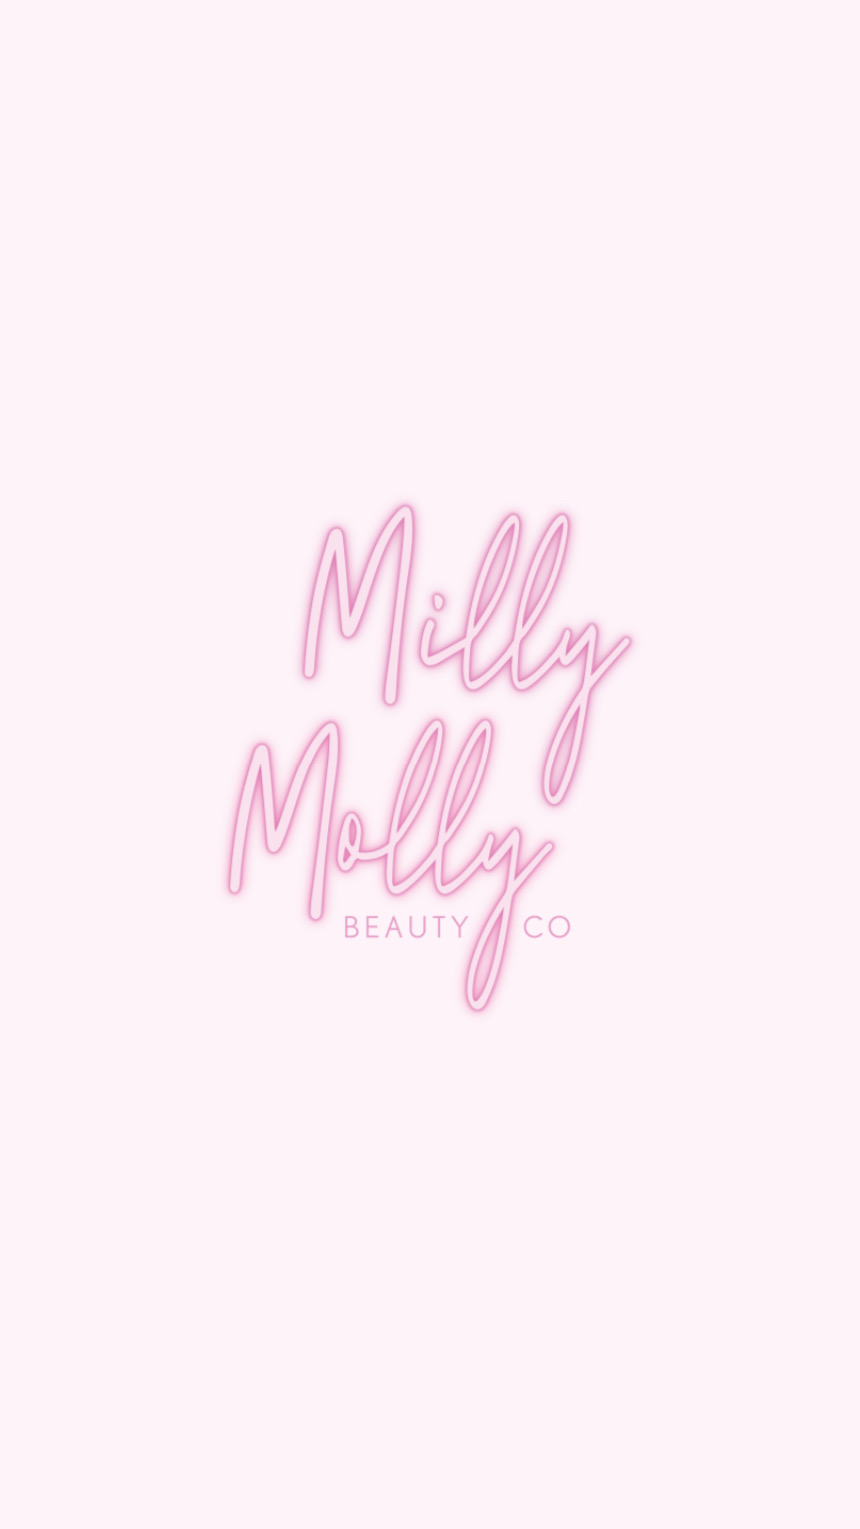 Milly Molly Beauty Co. | Trelleck Bush, Unit 2/2 Trelleck Ct, Alexandra Hills QLD 4161, Australia | Phone: 0427 853 960